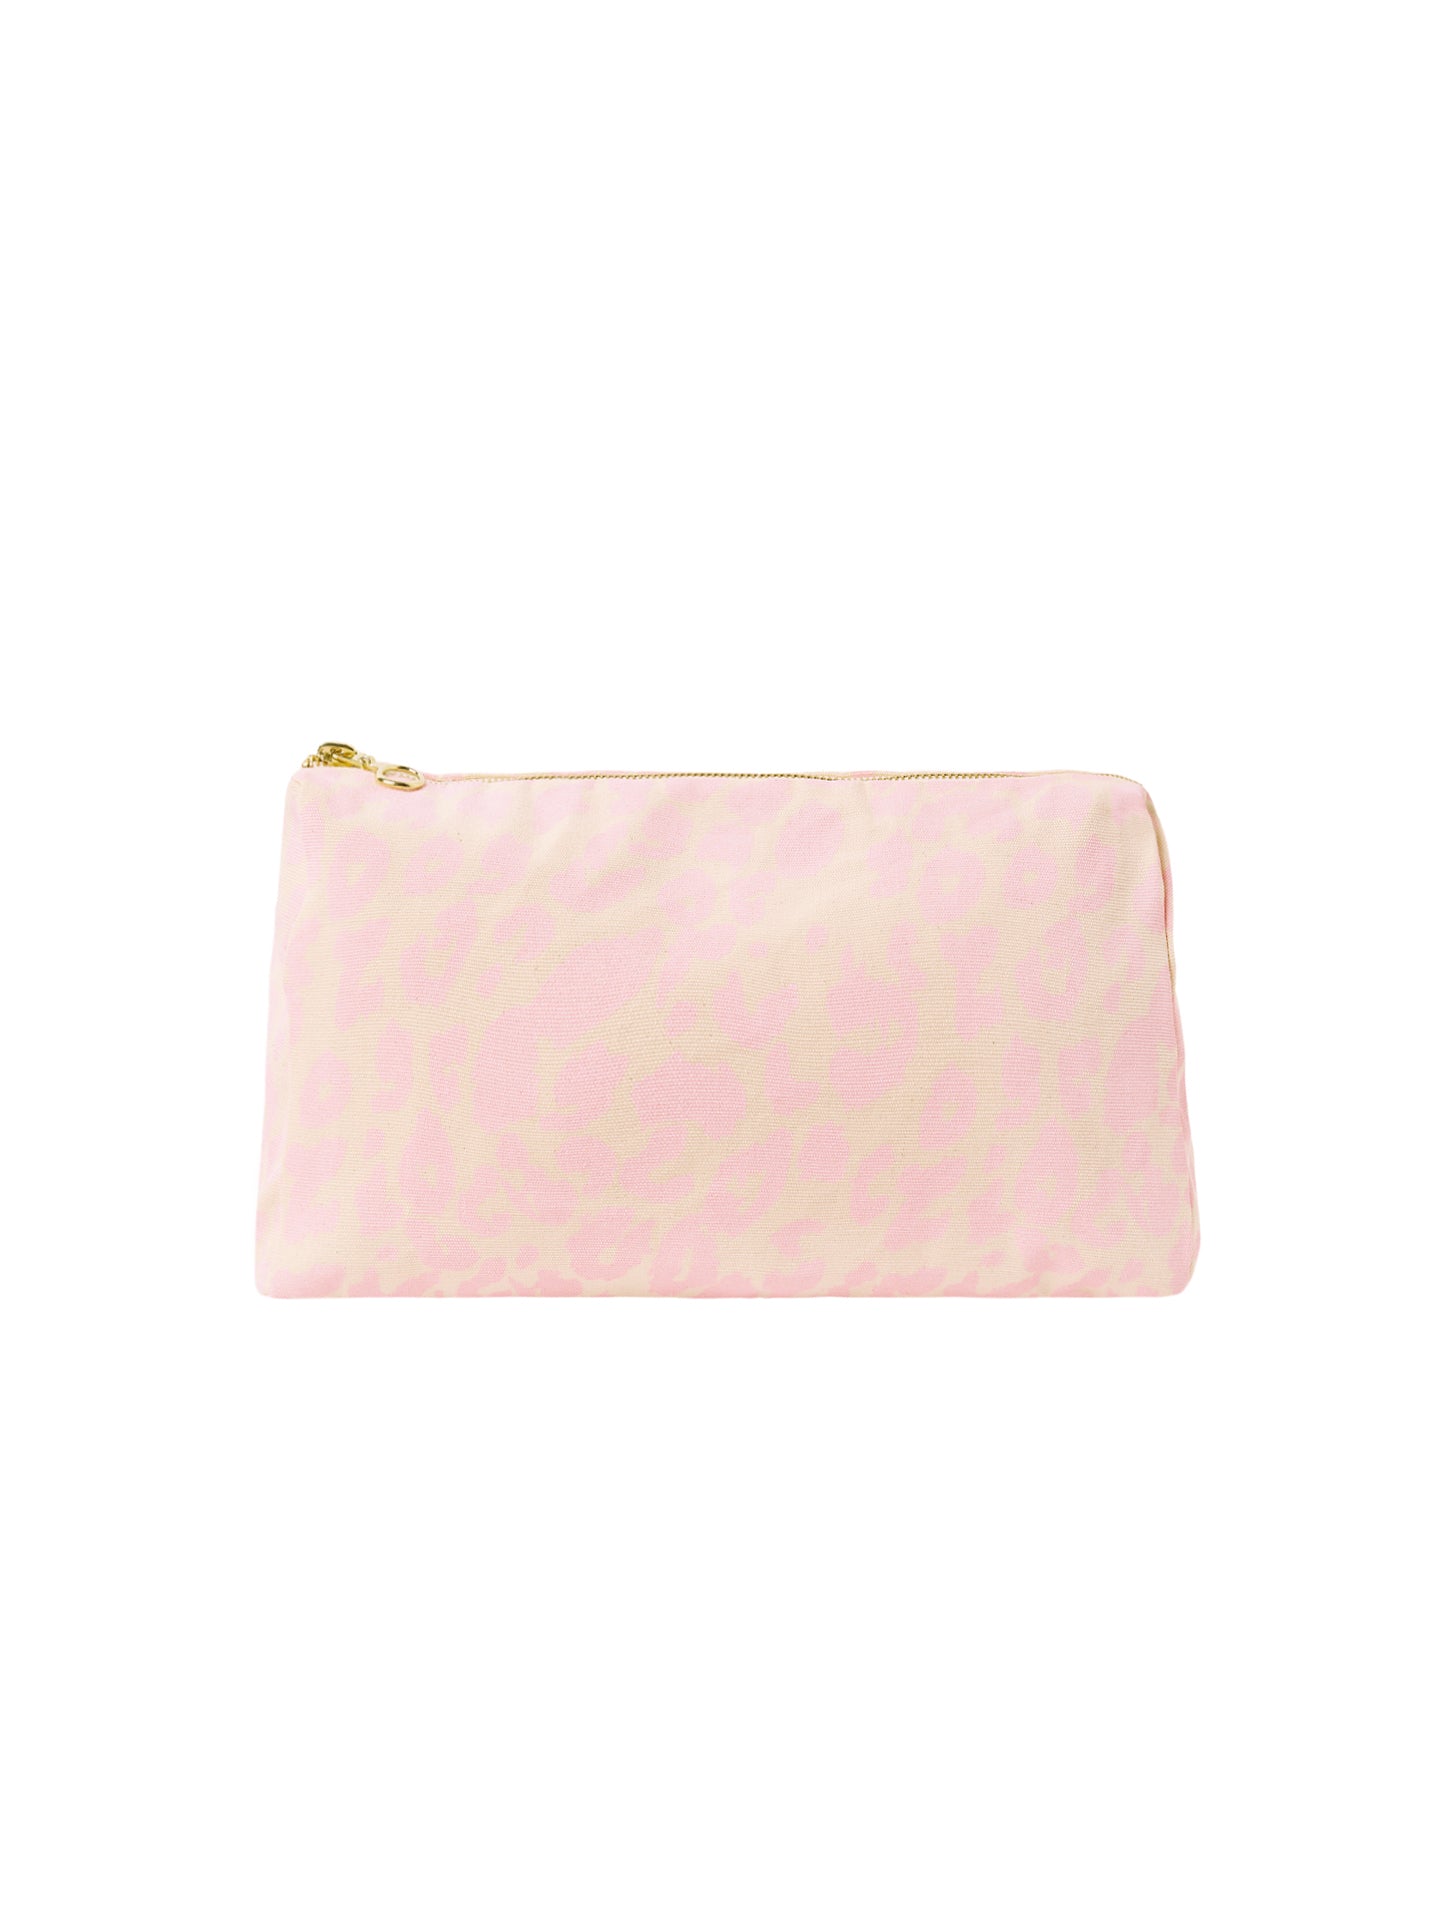 Leo Cosmetic Bag Medium - pastel pink/cream